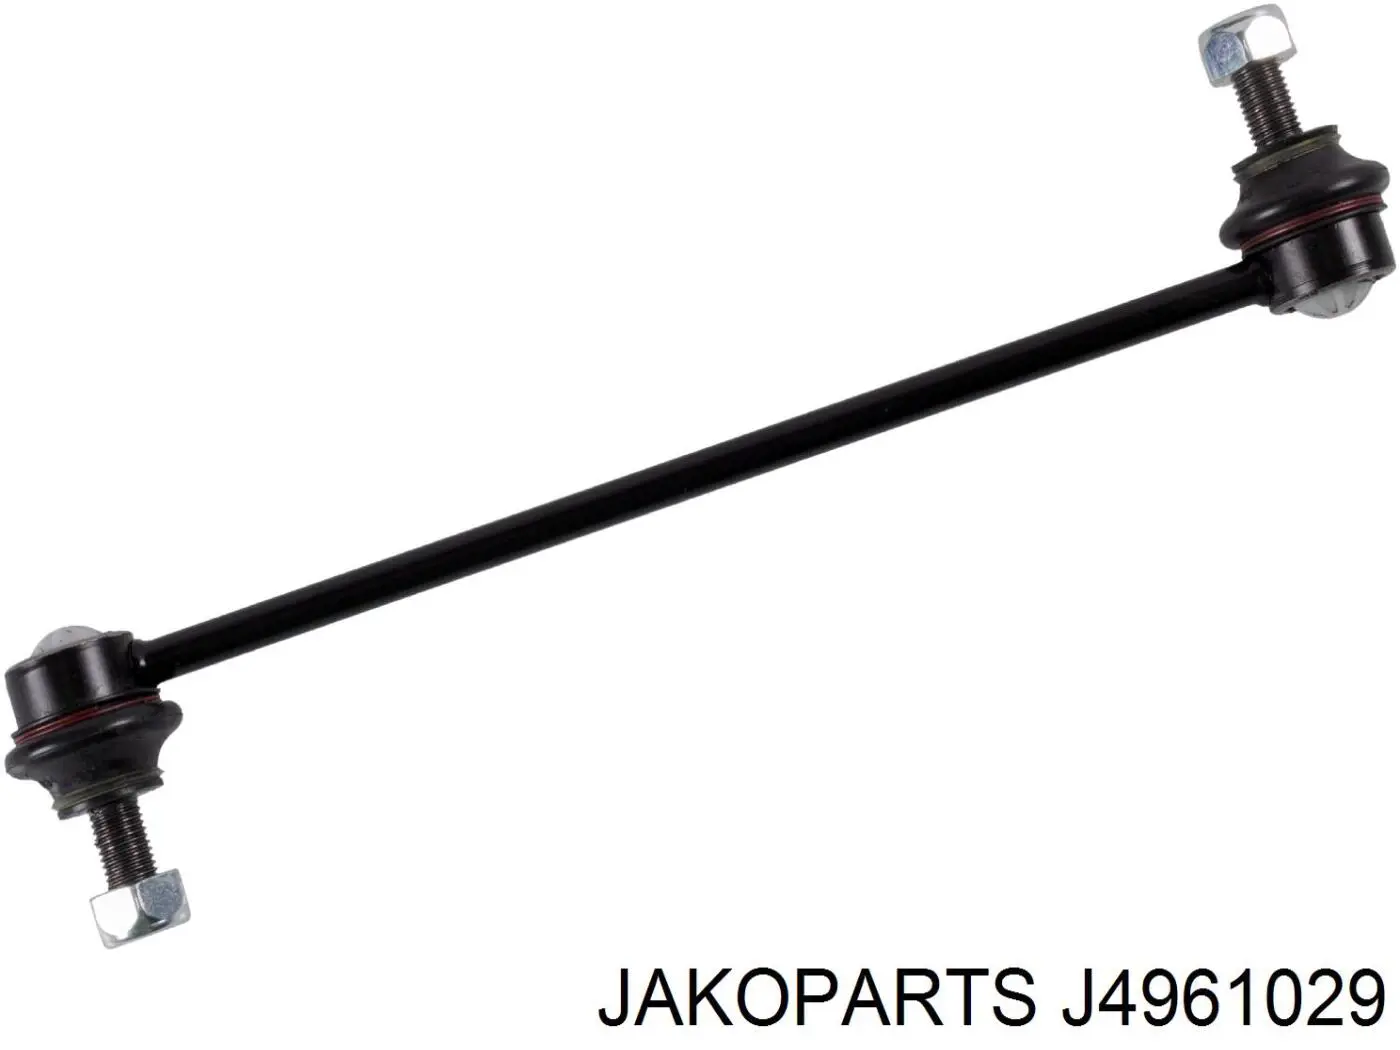 Soporte de barra estabilizadora delantera J4961029 Jakoparts